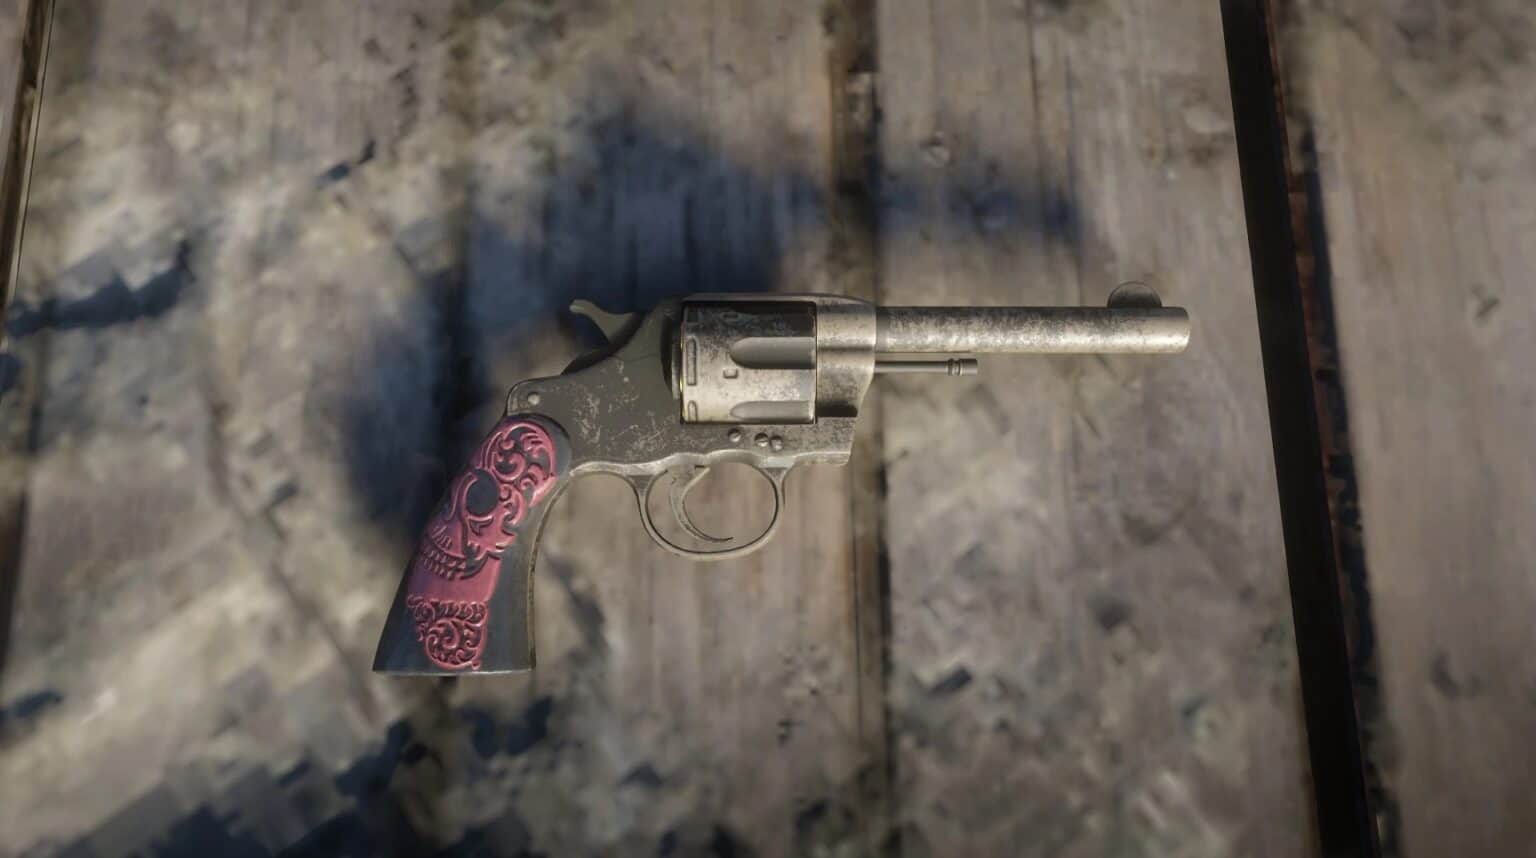 red dead revolver pcsx2 compatibility